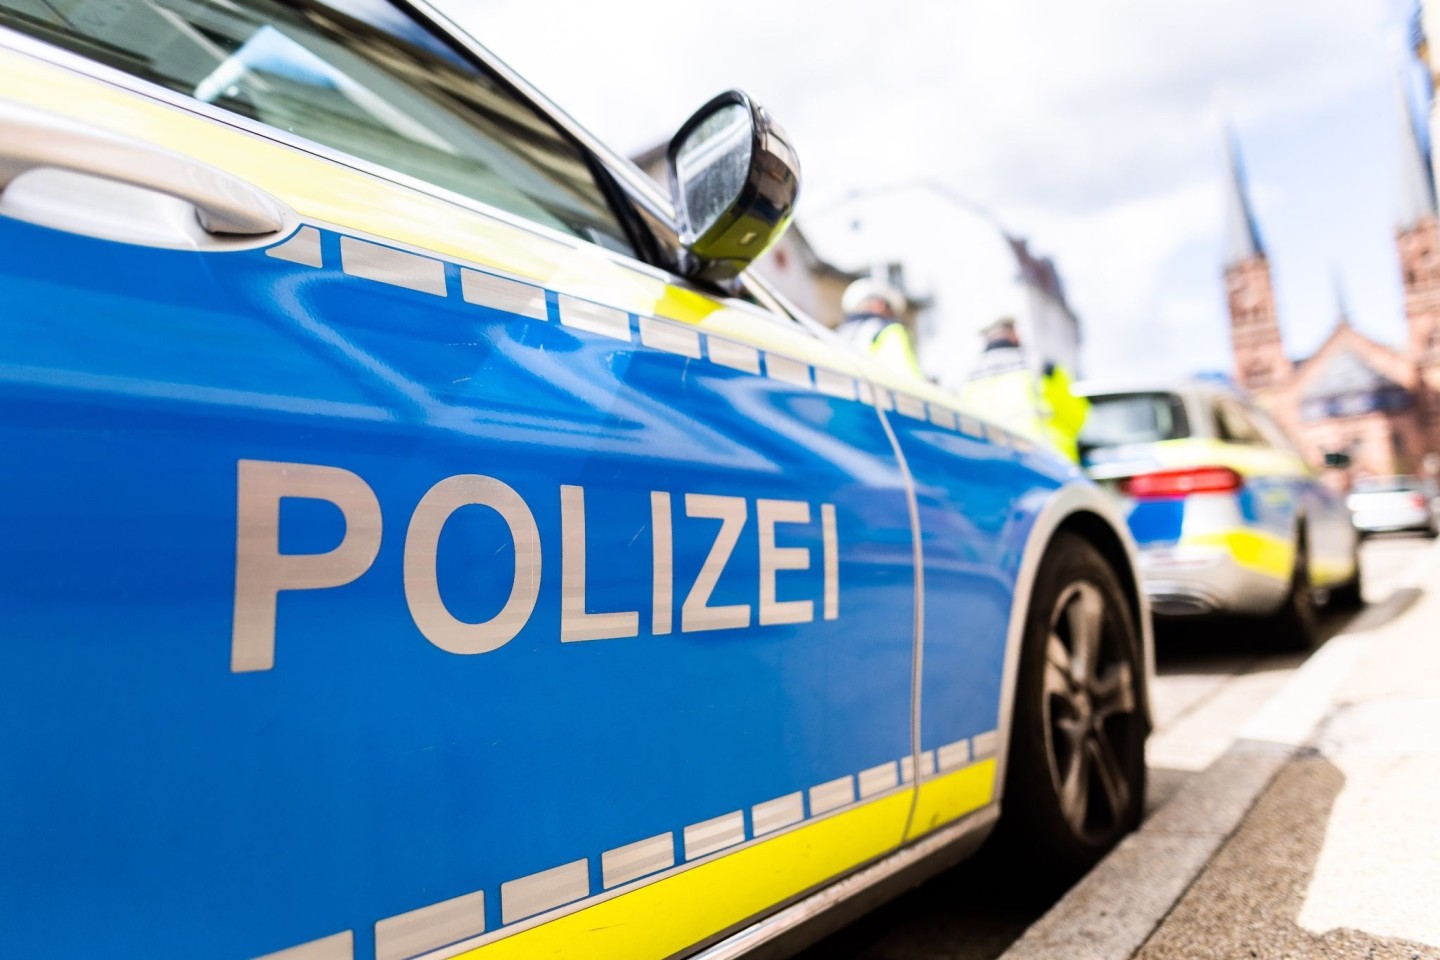 Die Polizei hat in Regensburg einen 34-Jährigen festgenommen, nach dem mit internationalem Haftbefehl gefahndet worden war.